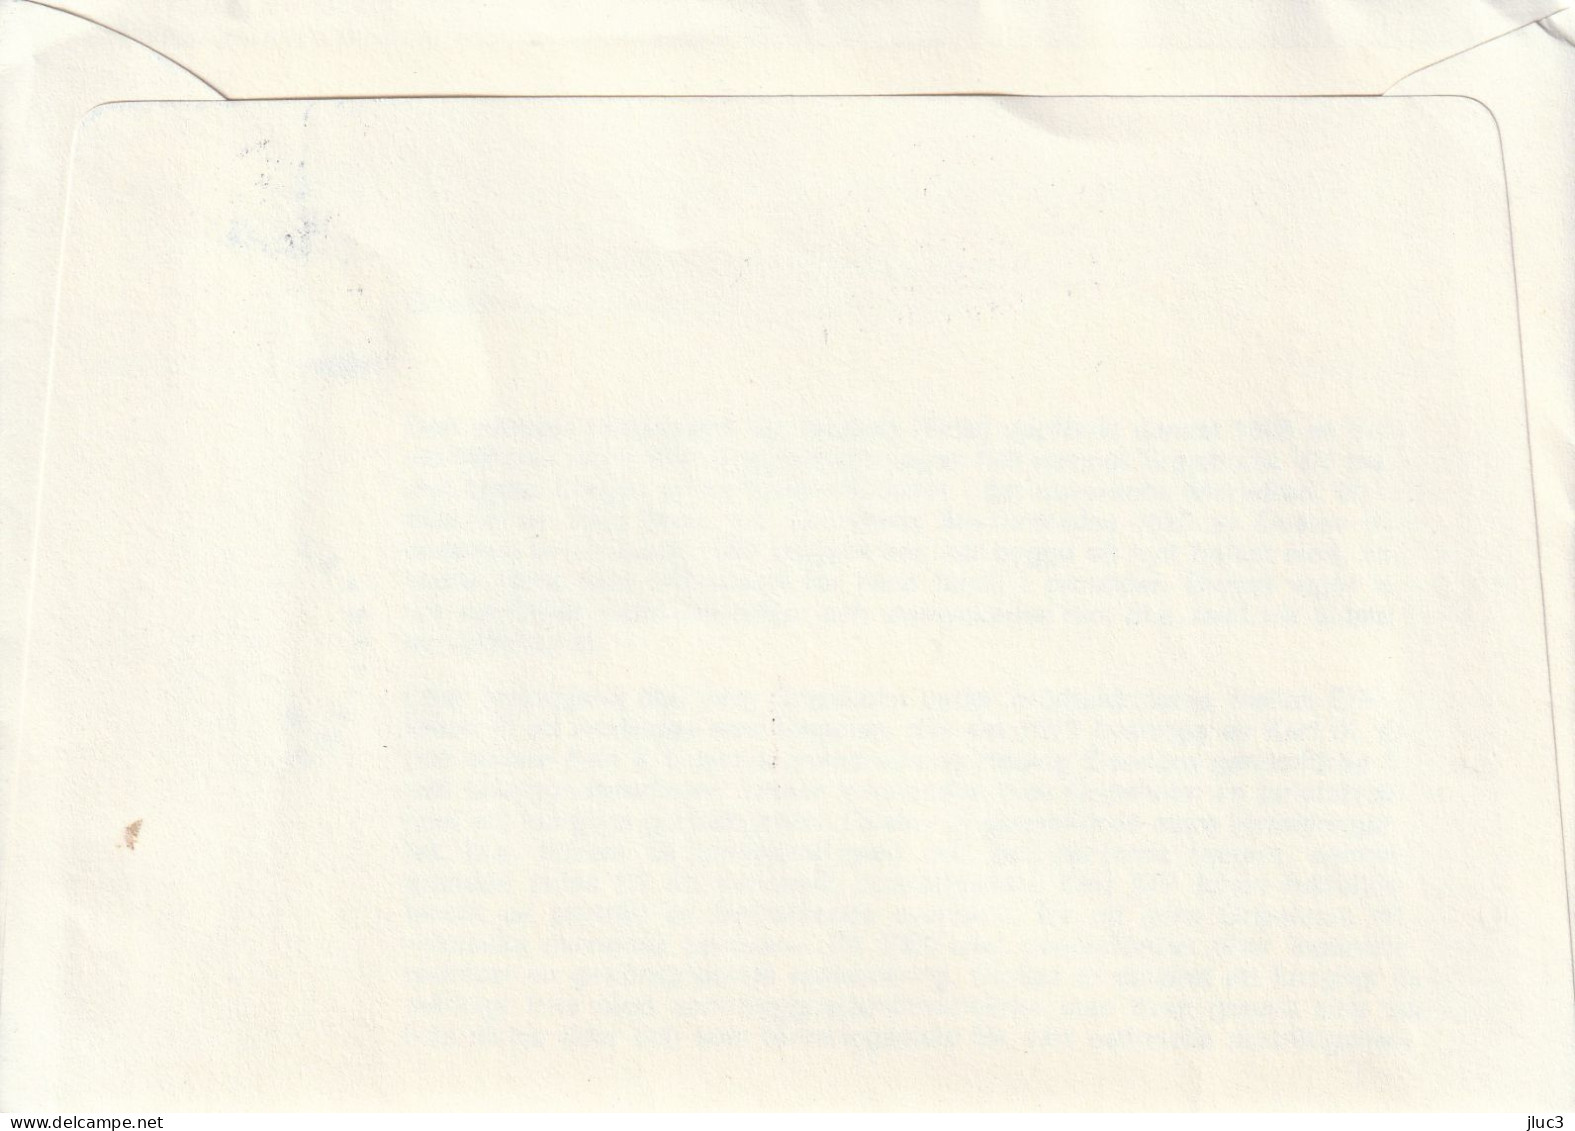 ZSueFdc-D016 - SUEDE  1967  --  La  Superbe  ENVELOPPE  FDC  'PREMIER  JOUR'  Du  11-04-1967  --  Château  De  Gripsholm - Cartas & Documentos